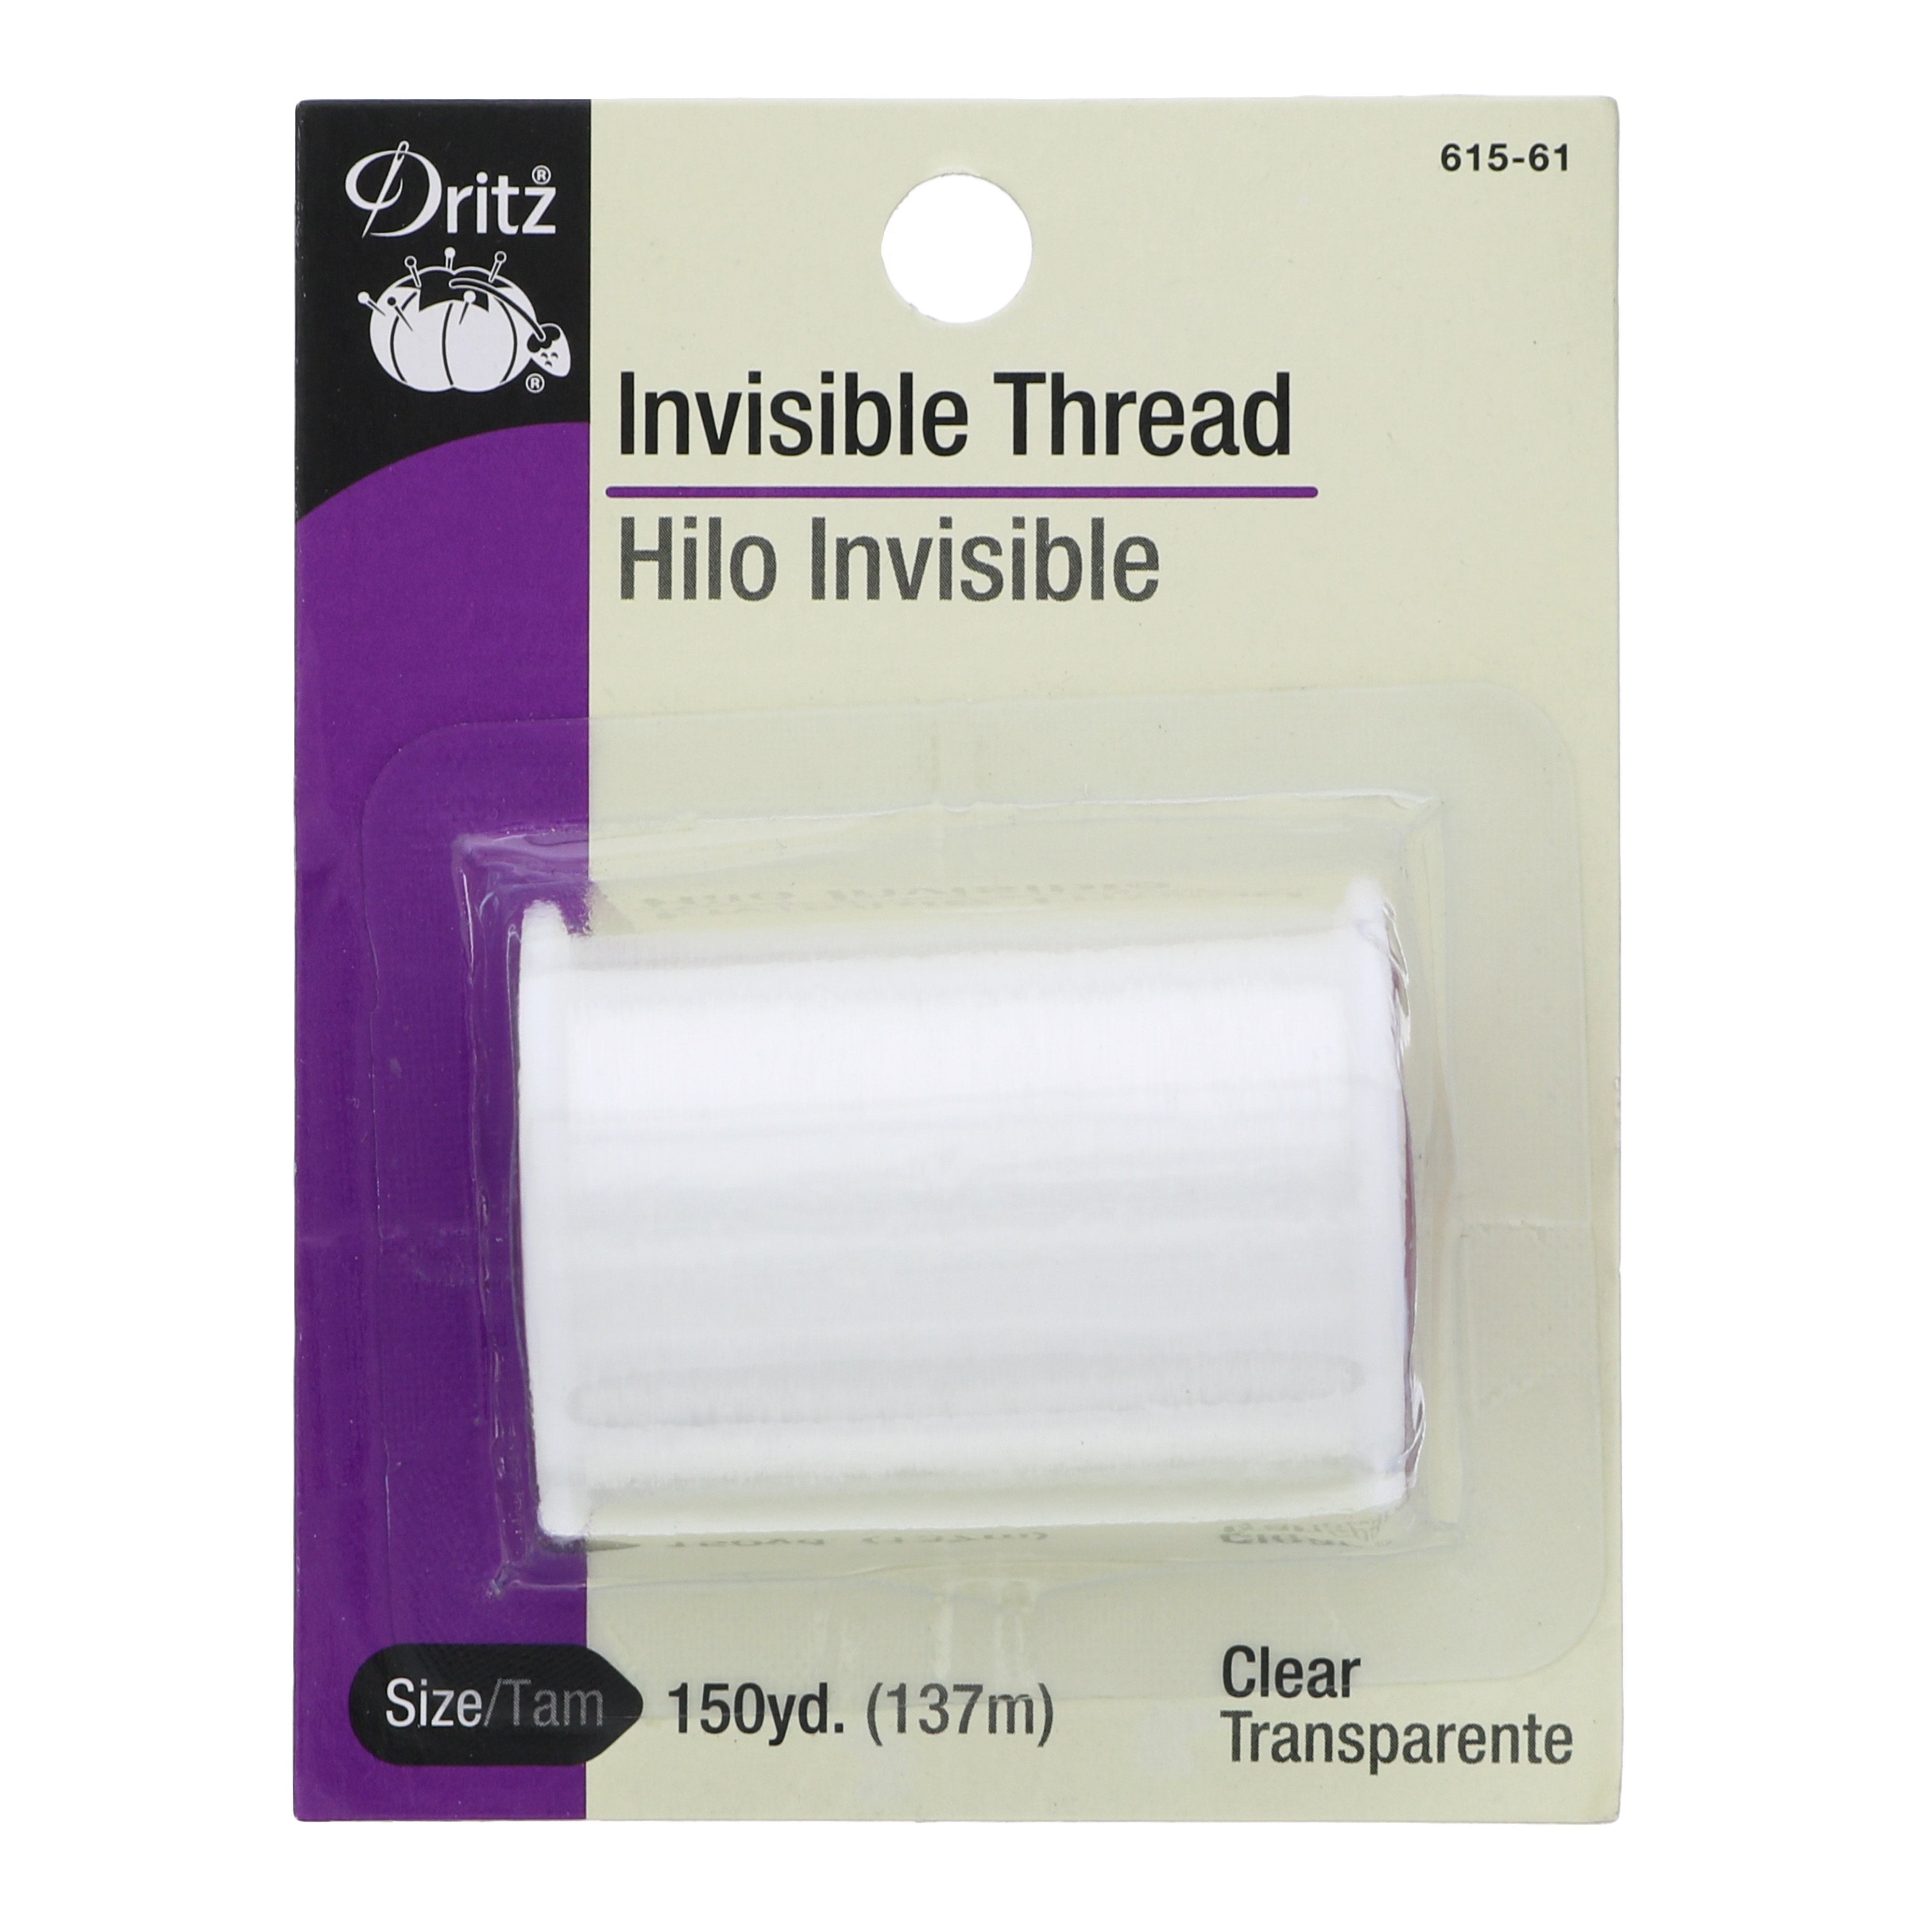 Unique Ultra Fine Invisible Thread